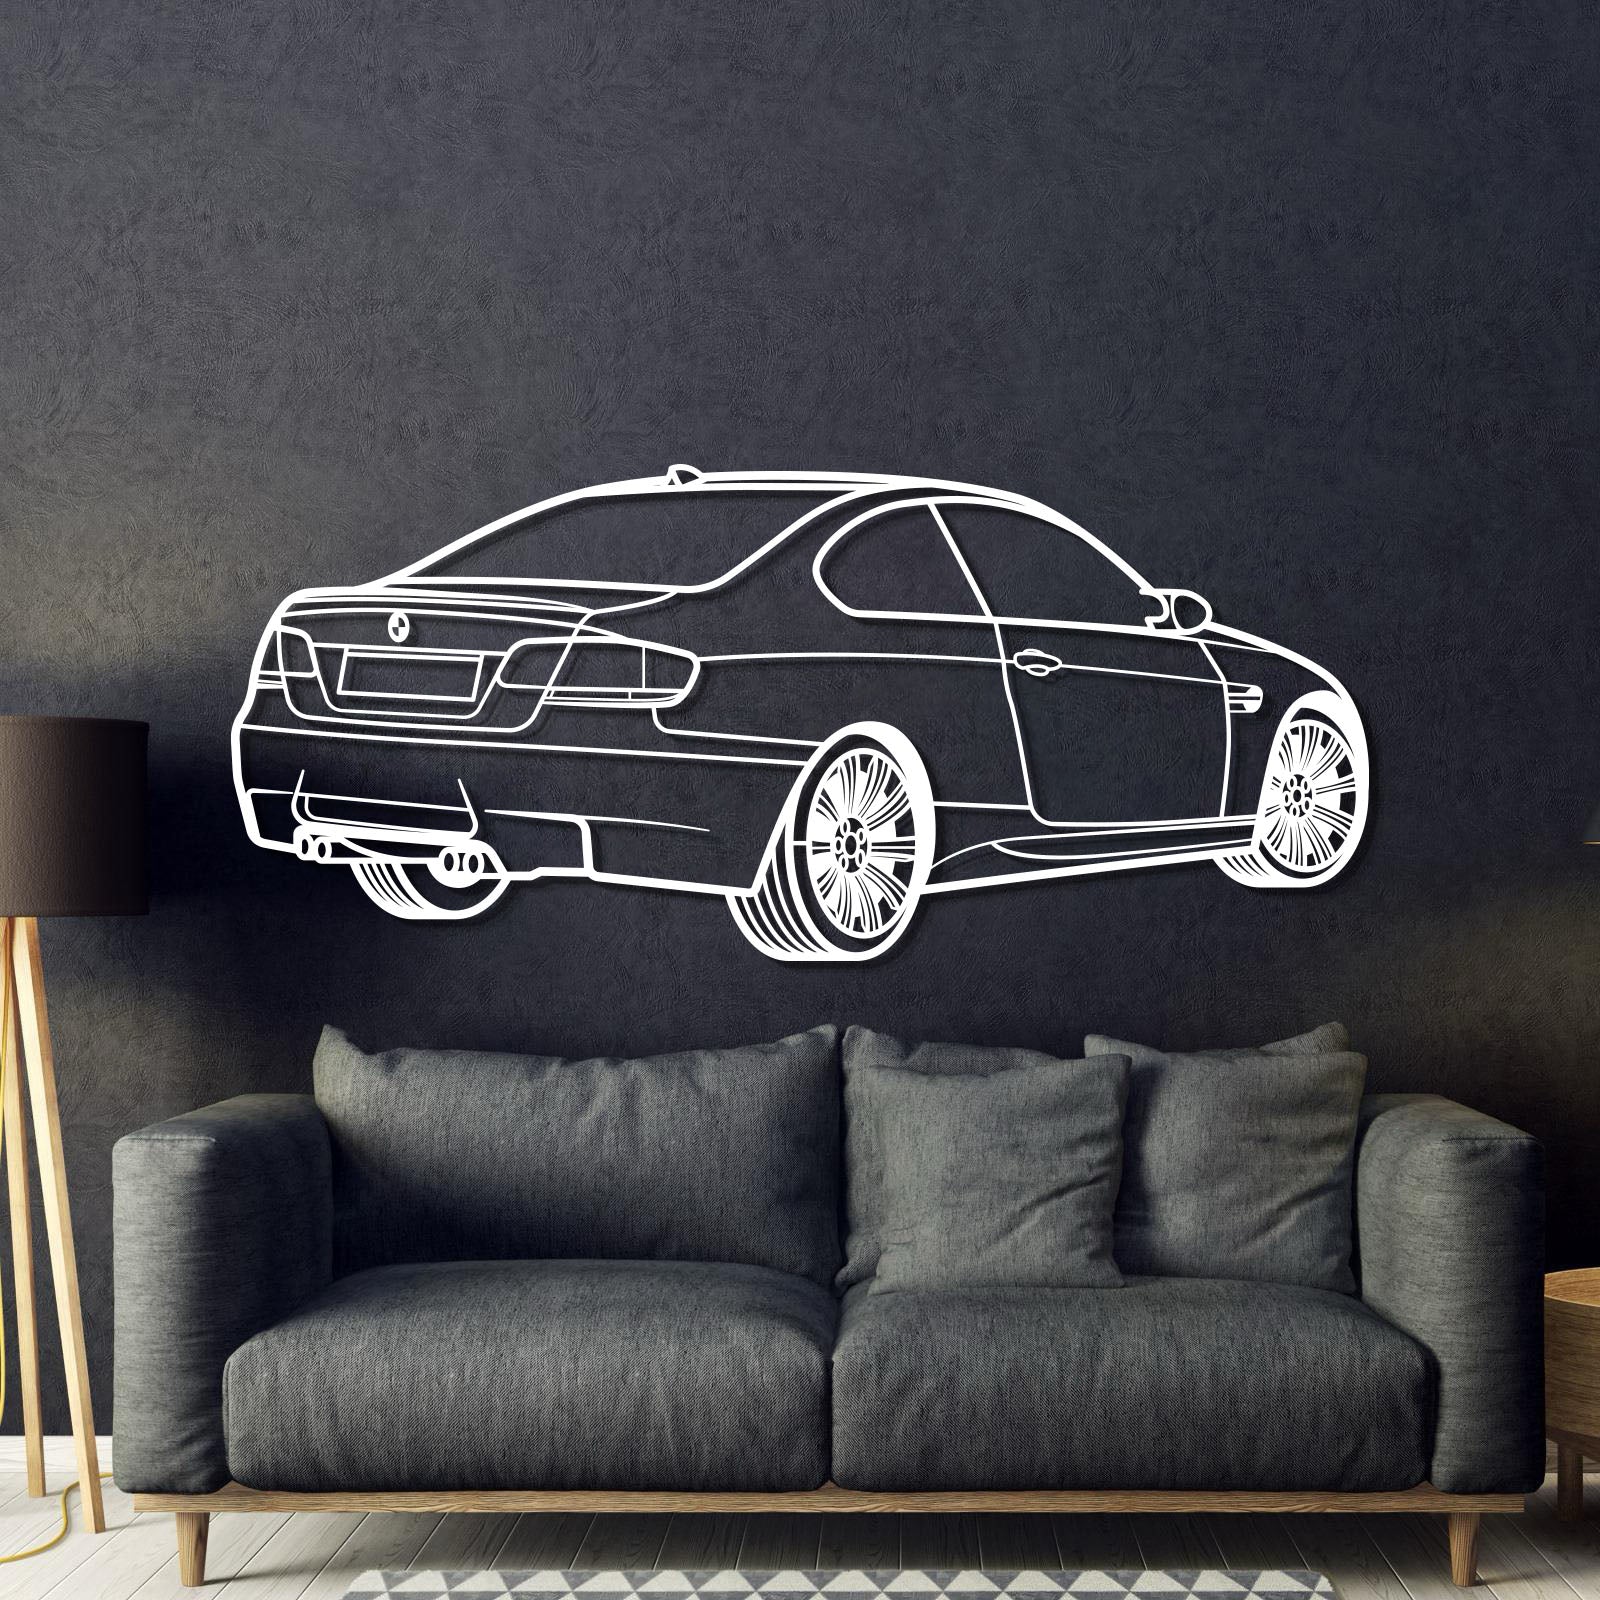 E92 Back Perspective Metal Car Wall Art - MT1300